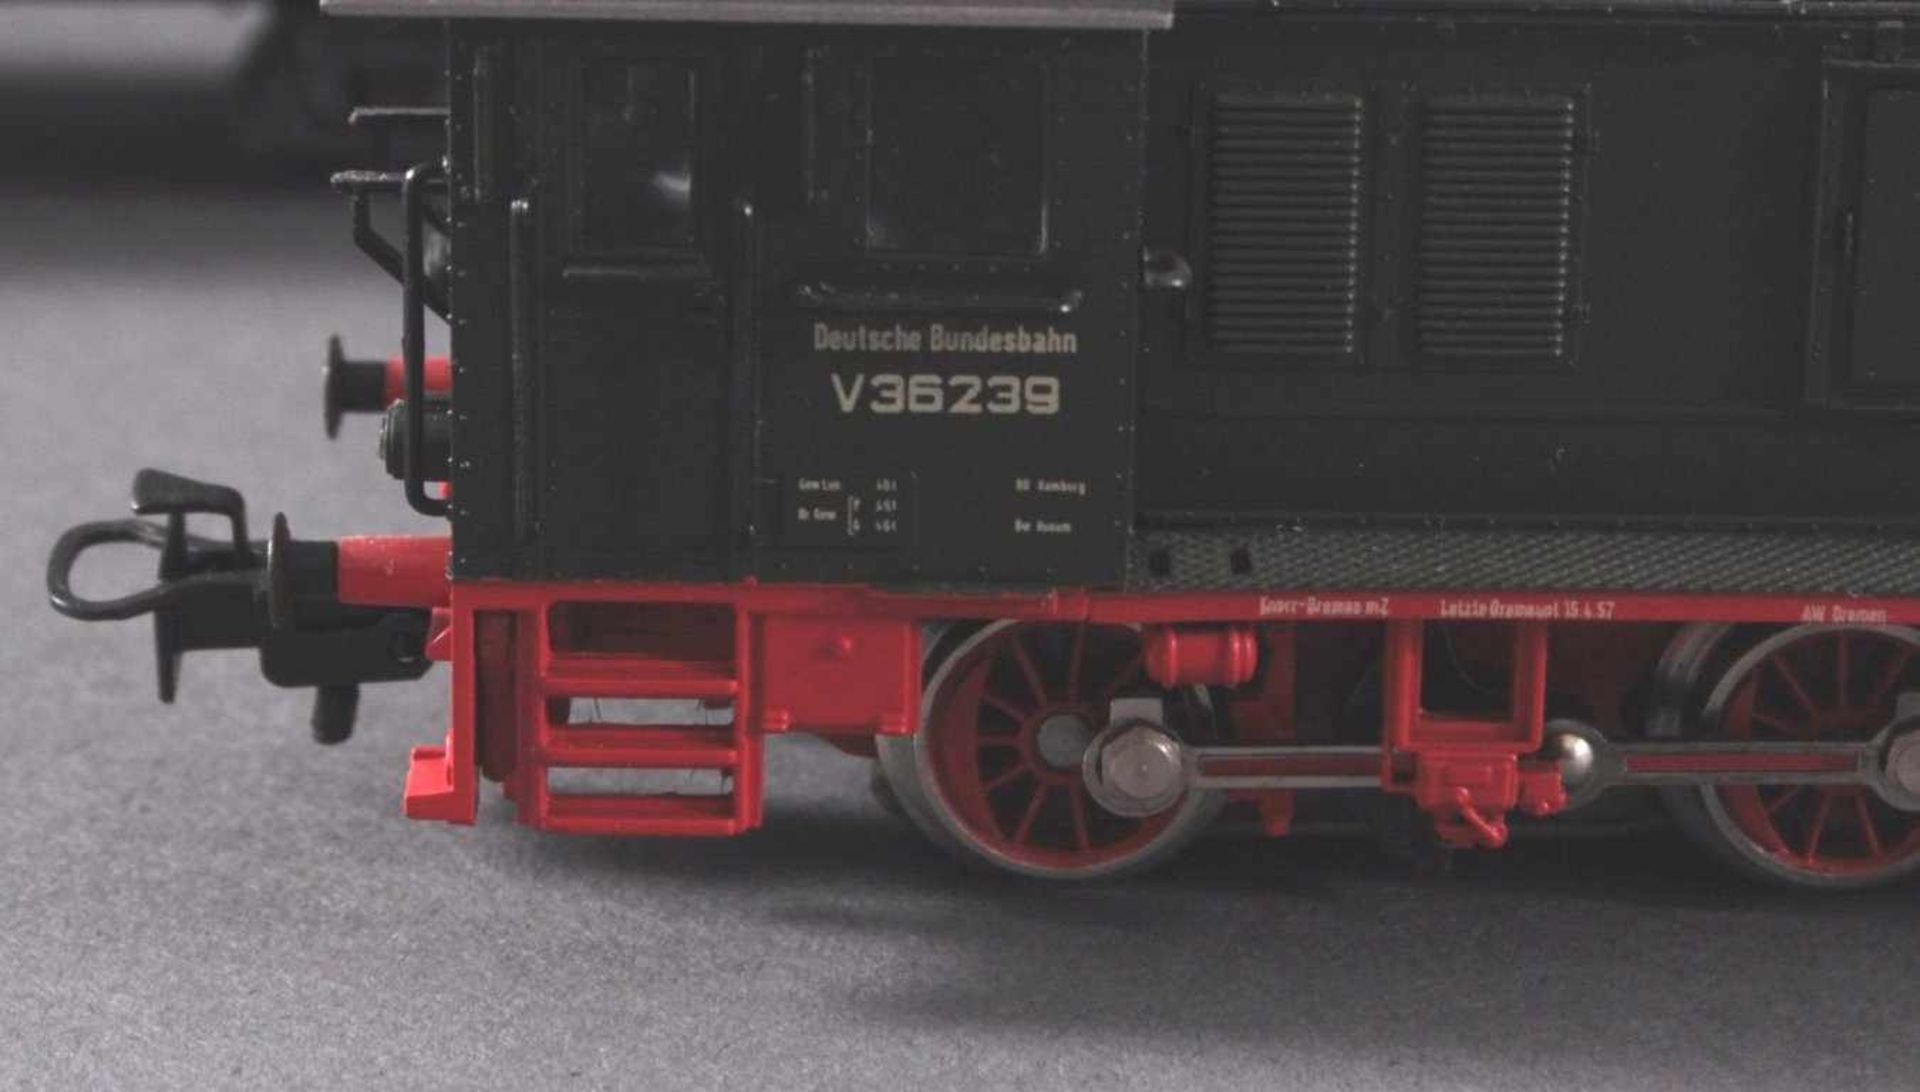 Märklin H0 V36239 Diesel-Lok DB mit2 Personen- und 3 Güterwaggons und 2 Modellautos - Bild 3 aus 3